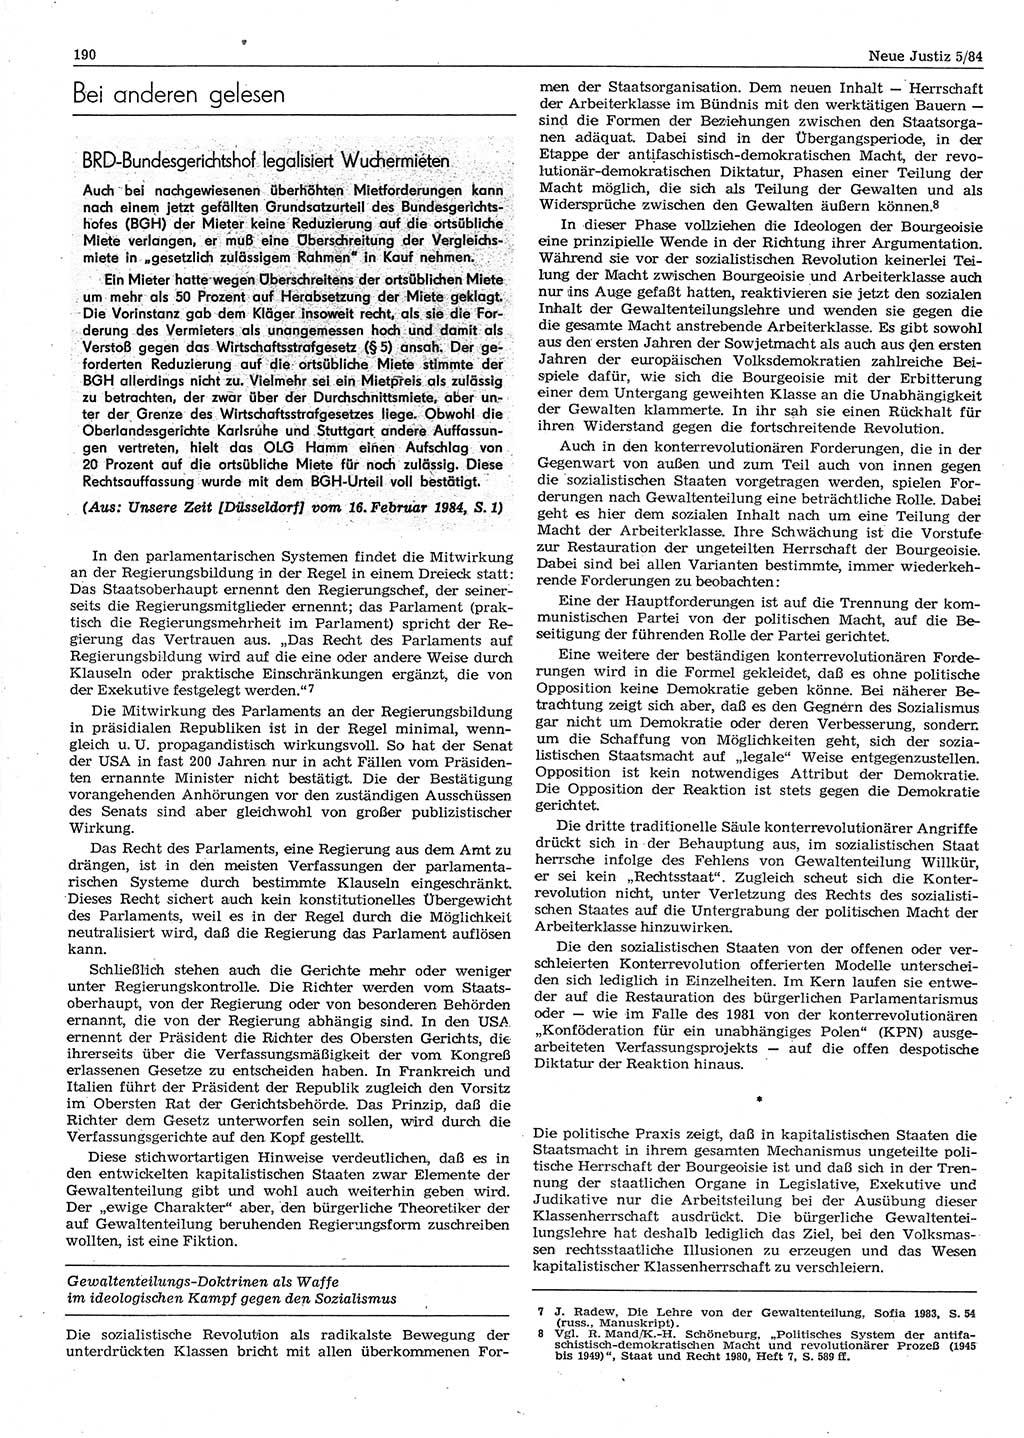 Neue Justiz (NJ), Zeitschrift für sozialistisches Recht und Gesetzlichkeit [Deutsche Demokratische Republik (DDR)], 38. Jahrgang 1984, Seite 190 (NJ DDR 1984, S. 190)